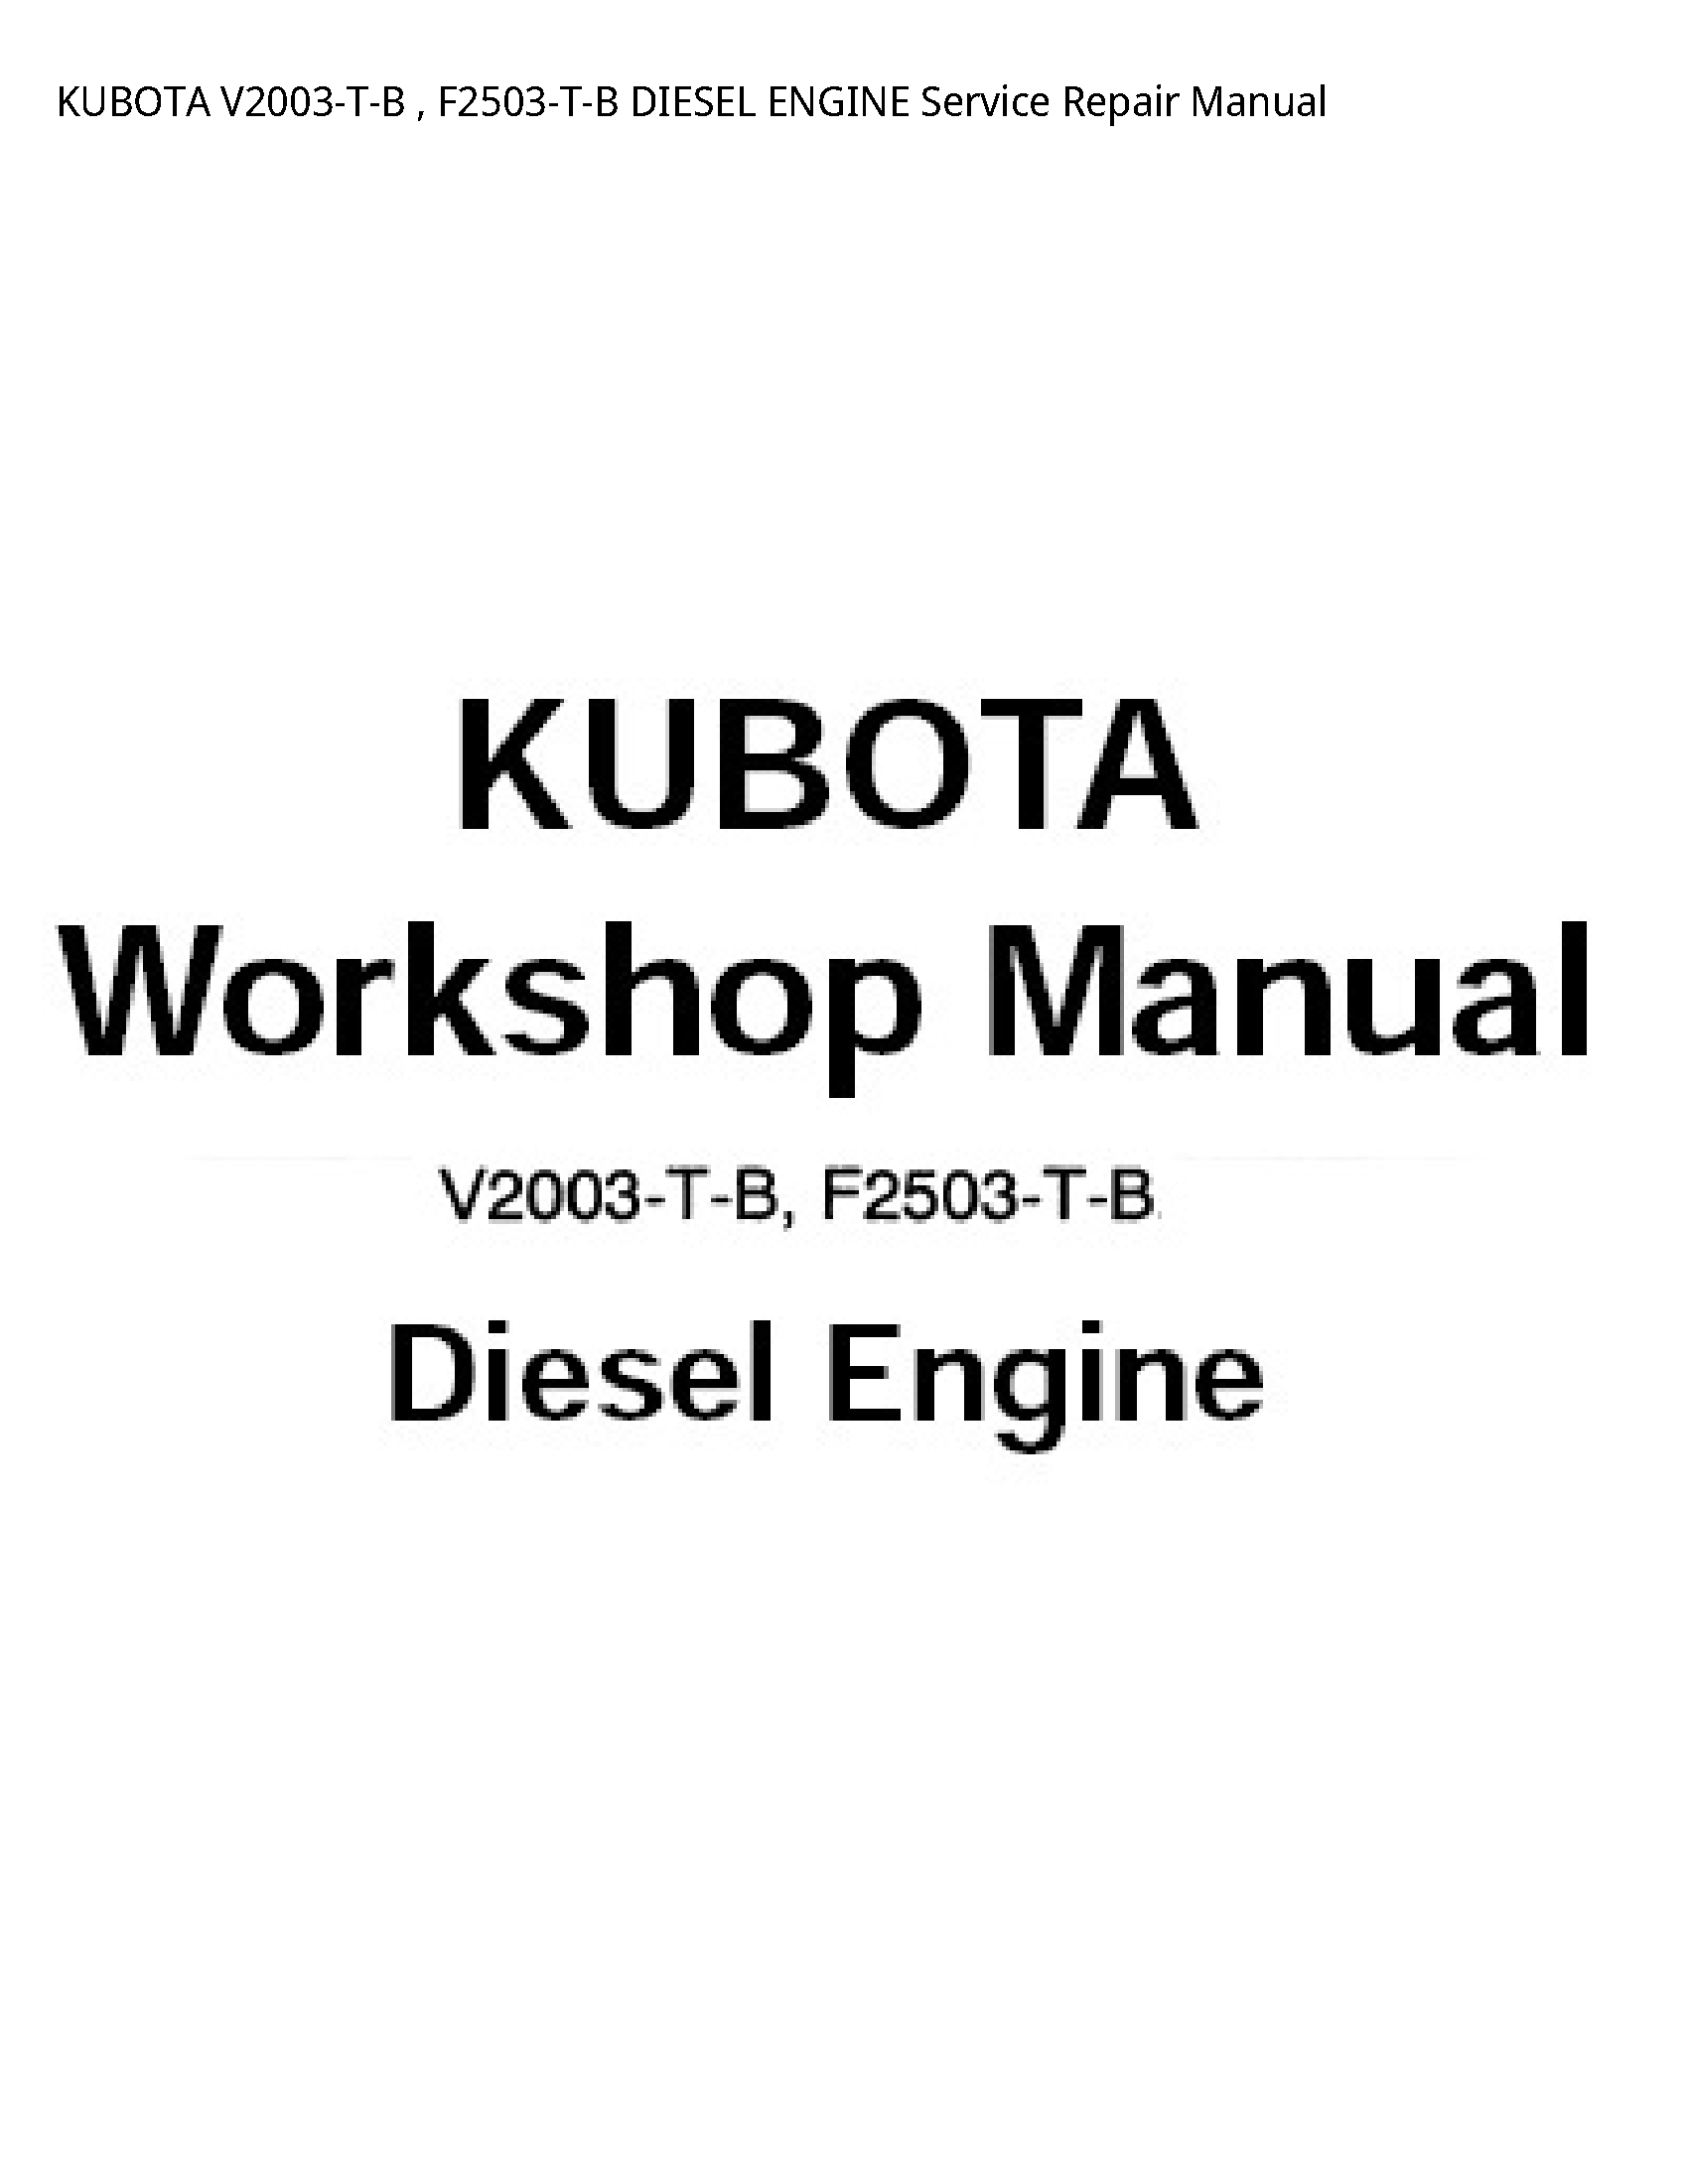 Kubota V2003-T-B DIESEL ENGINE manual